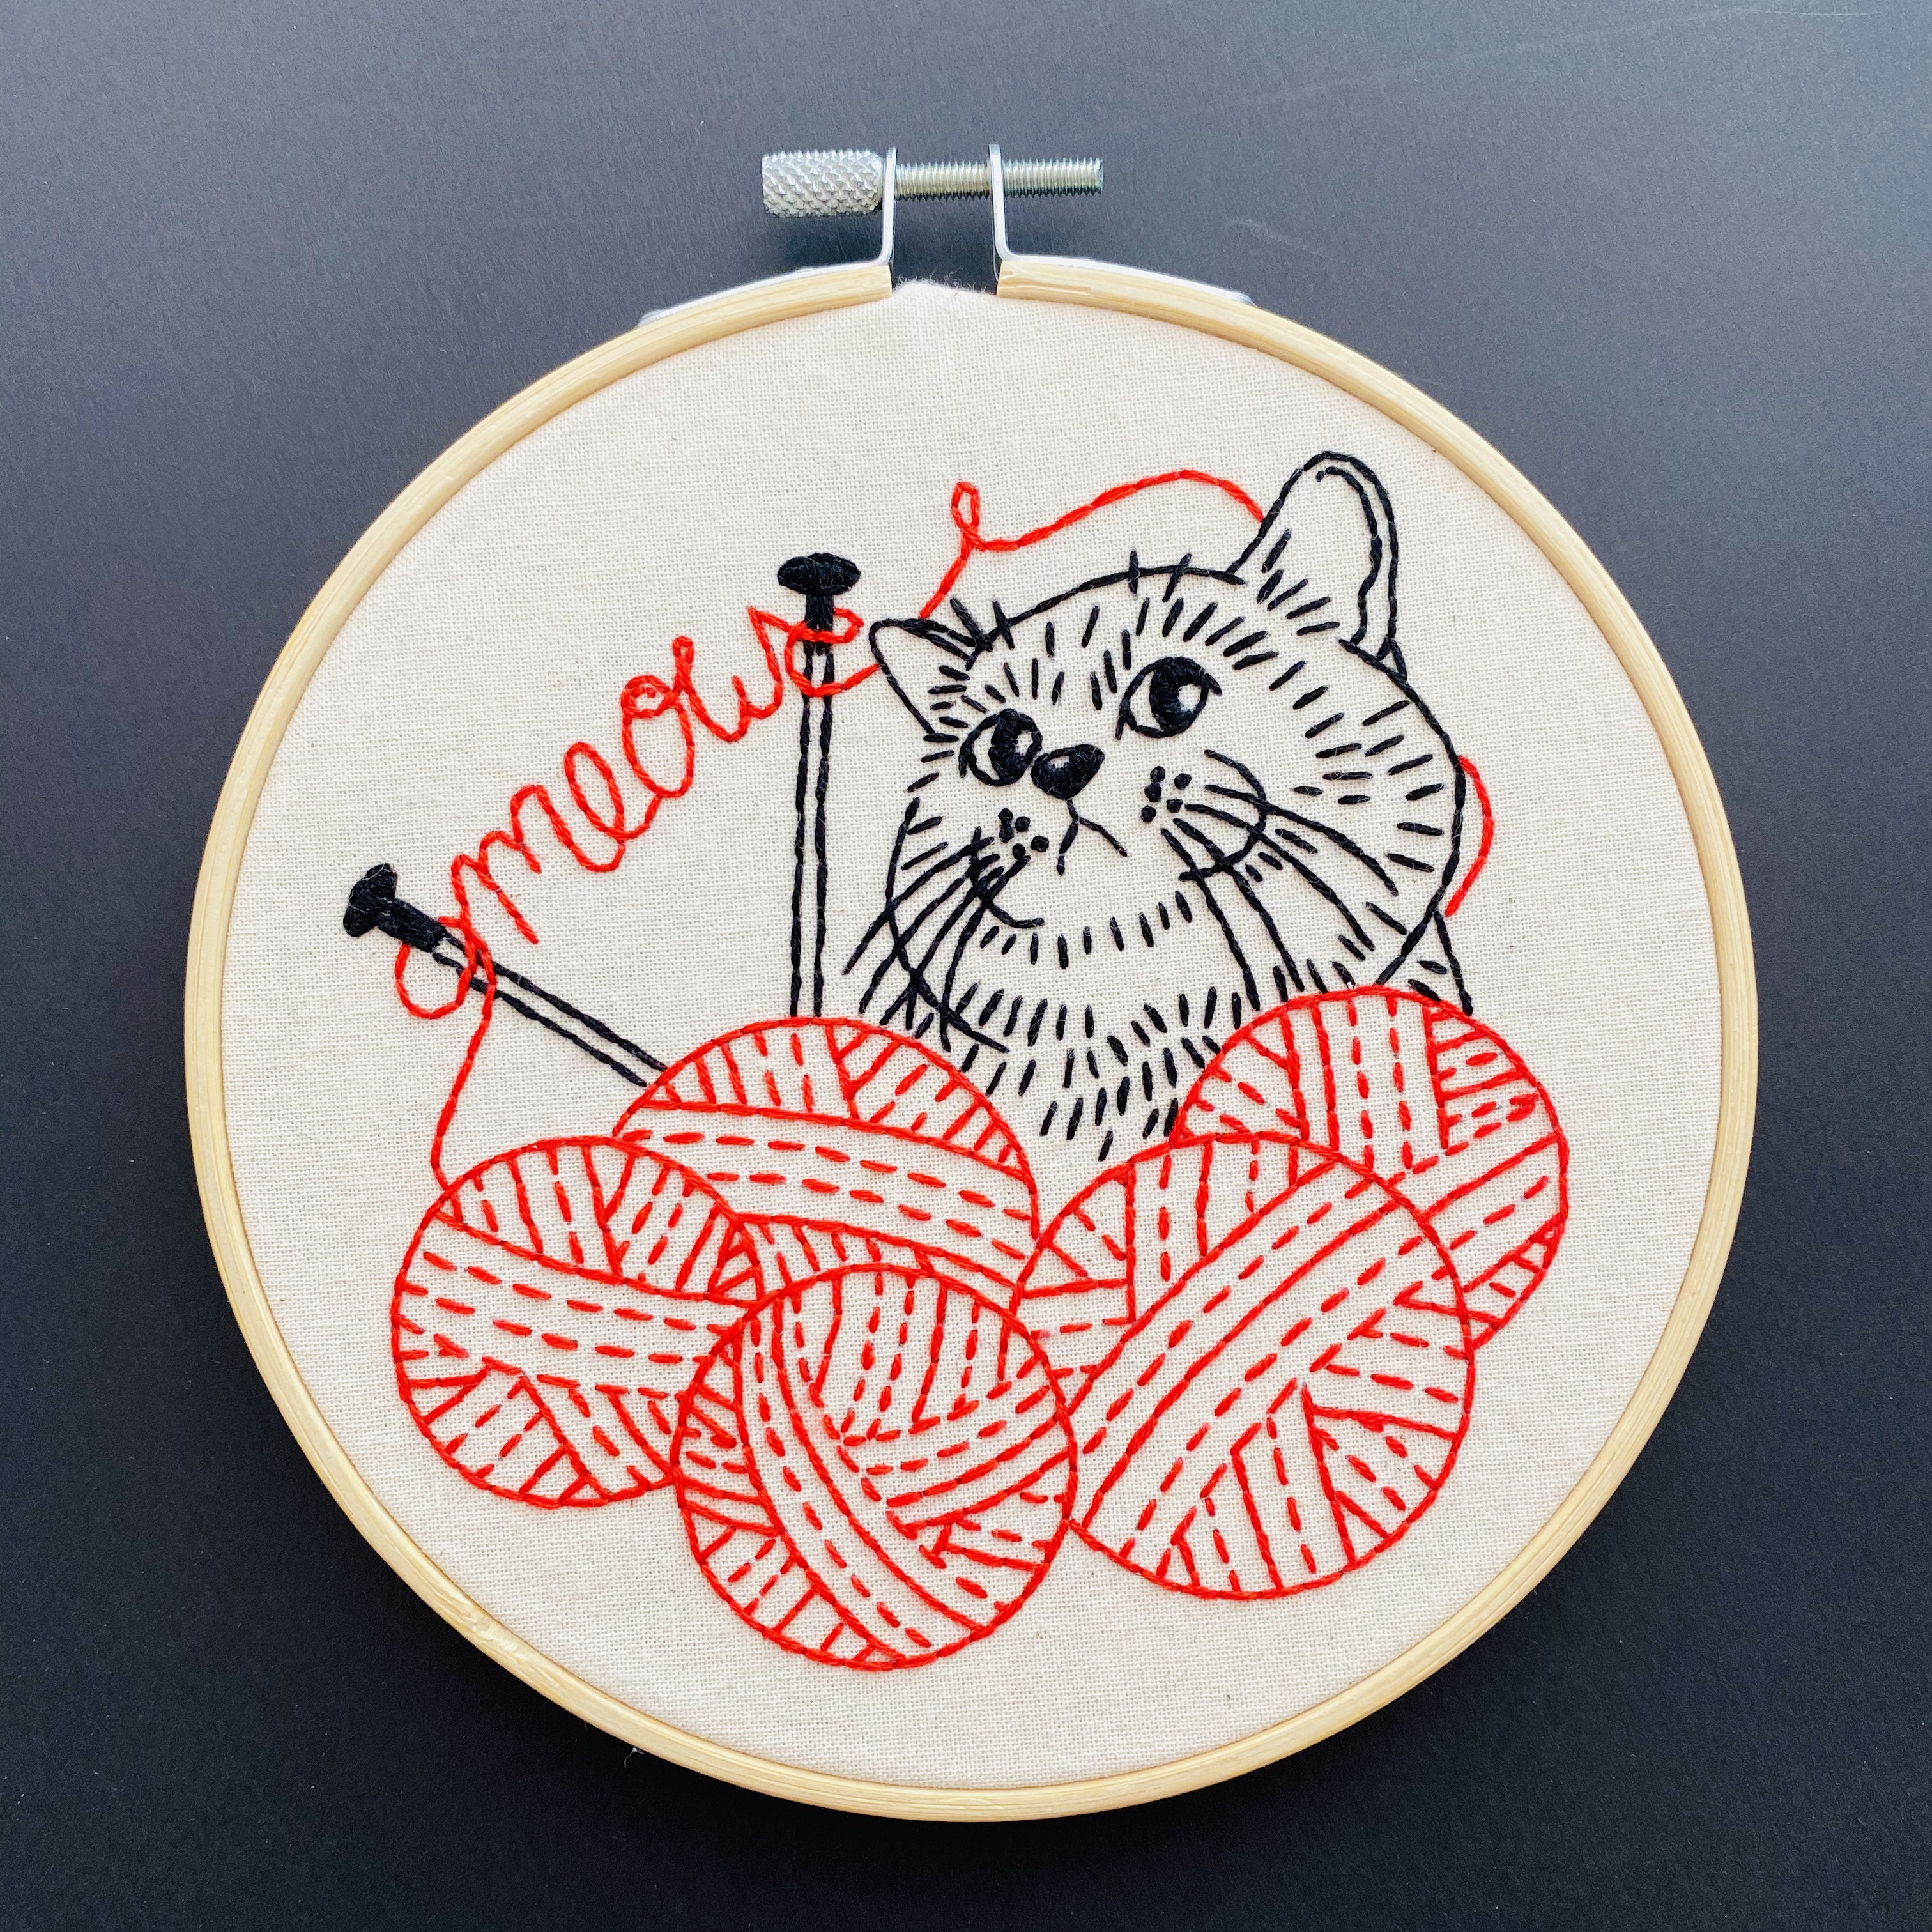 Dolhan First Time Beginner Embroidery Kit Knitting Kitten